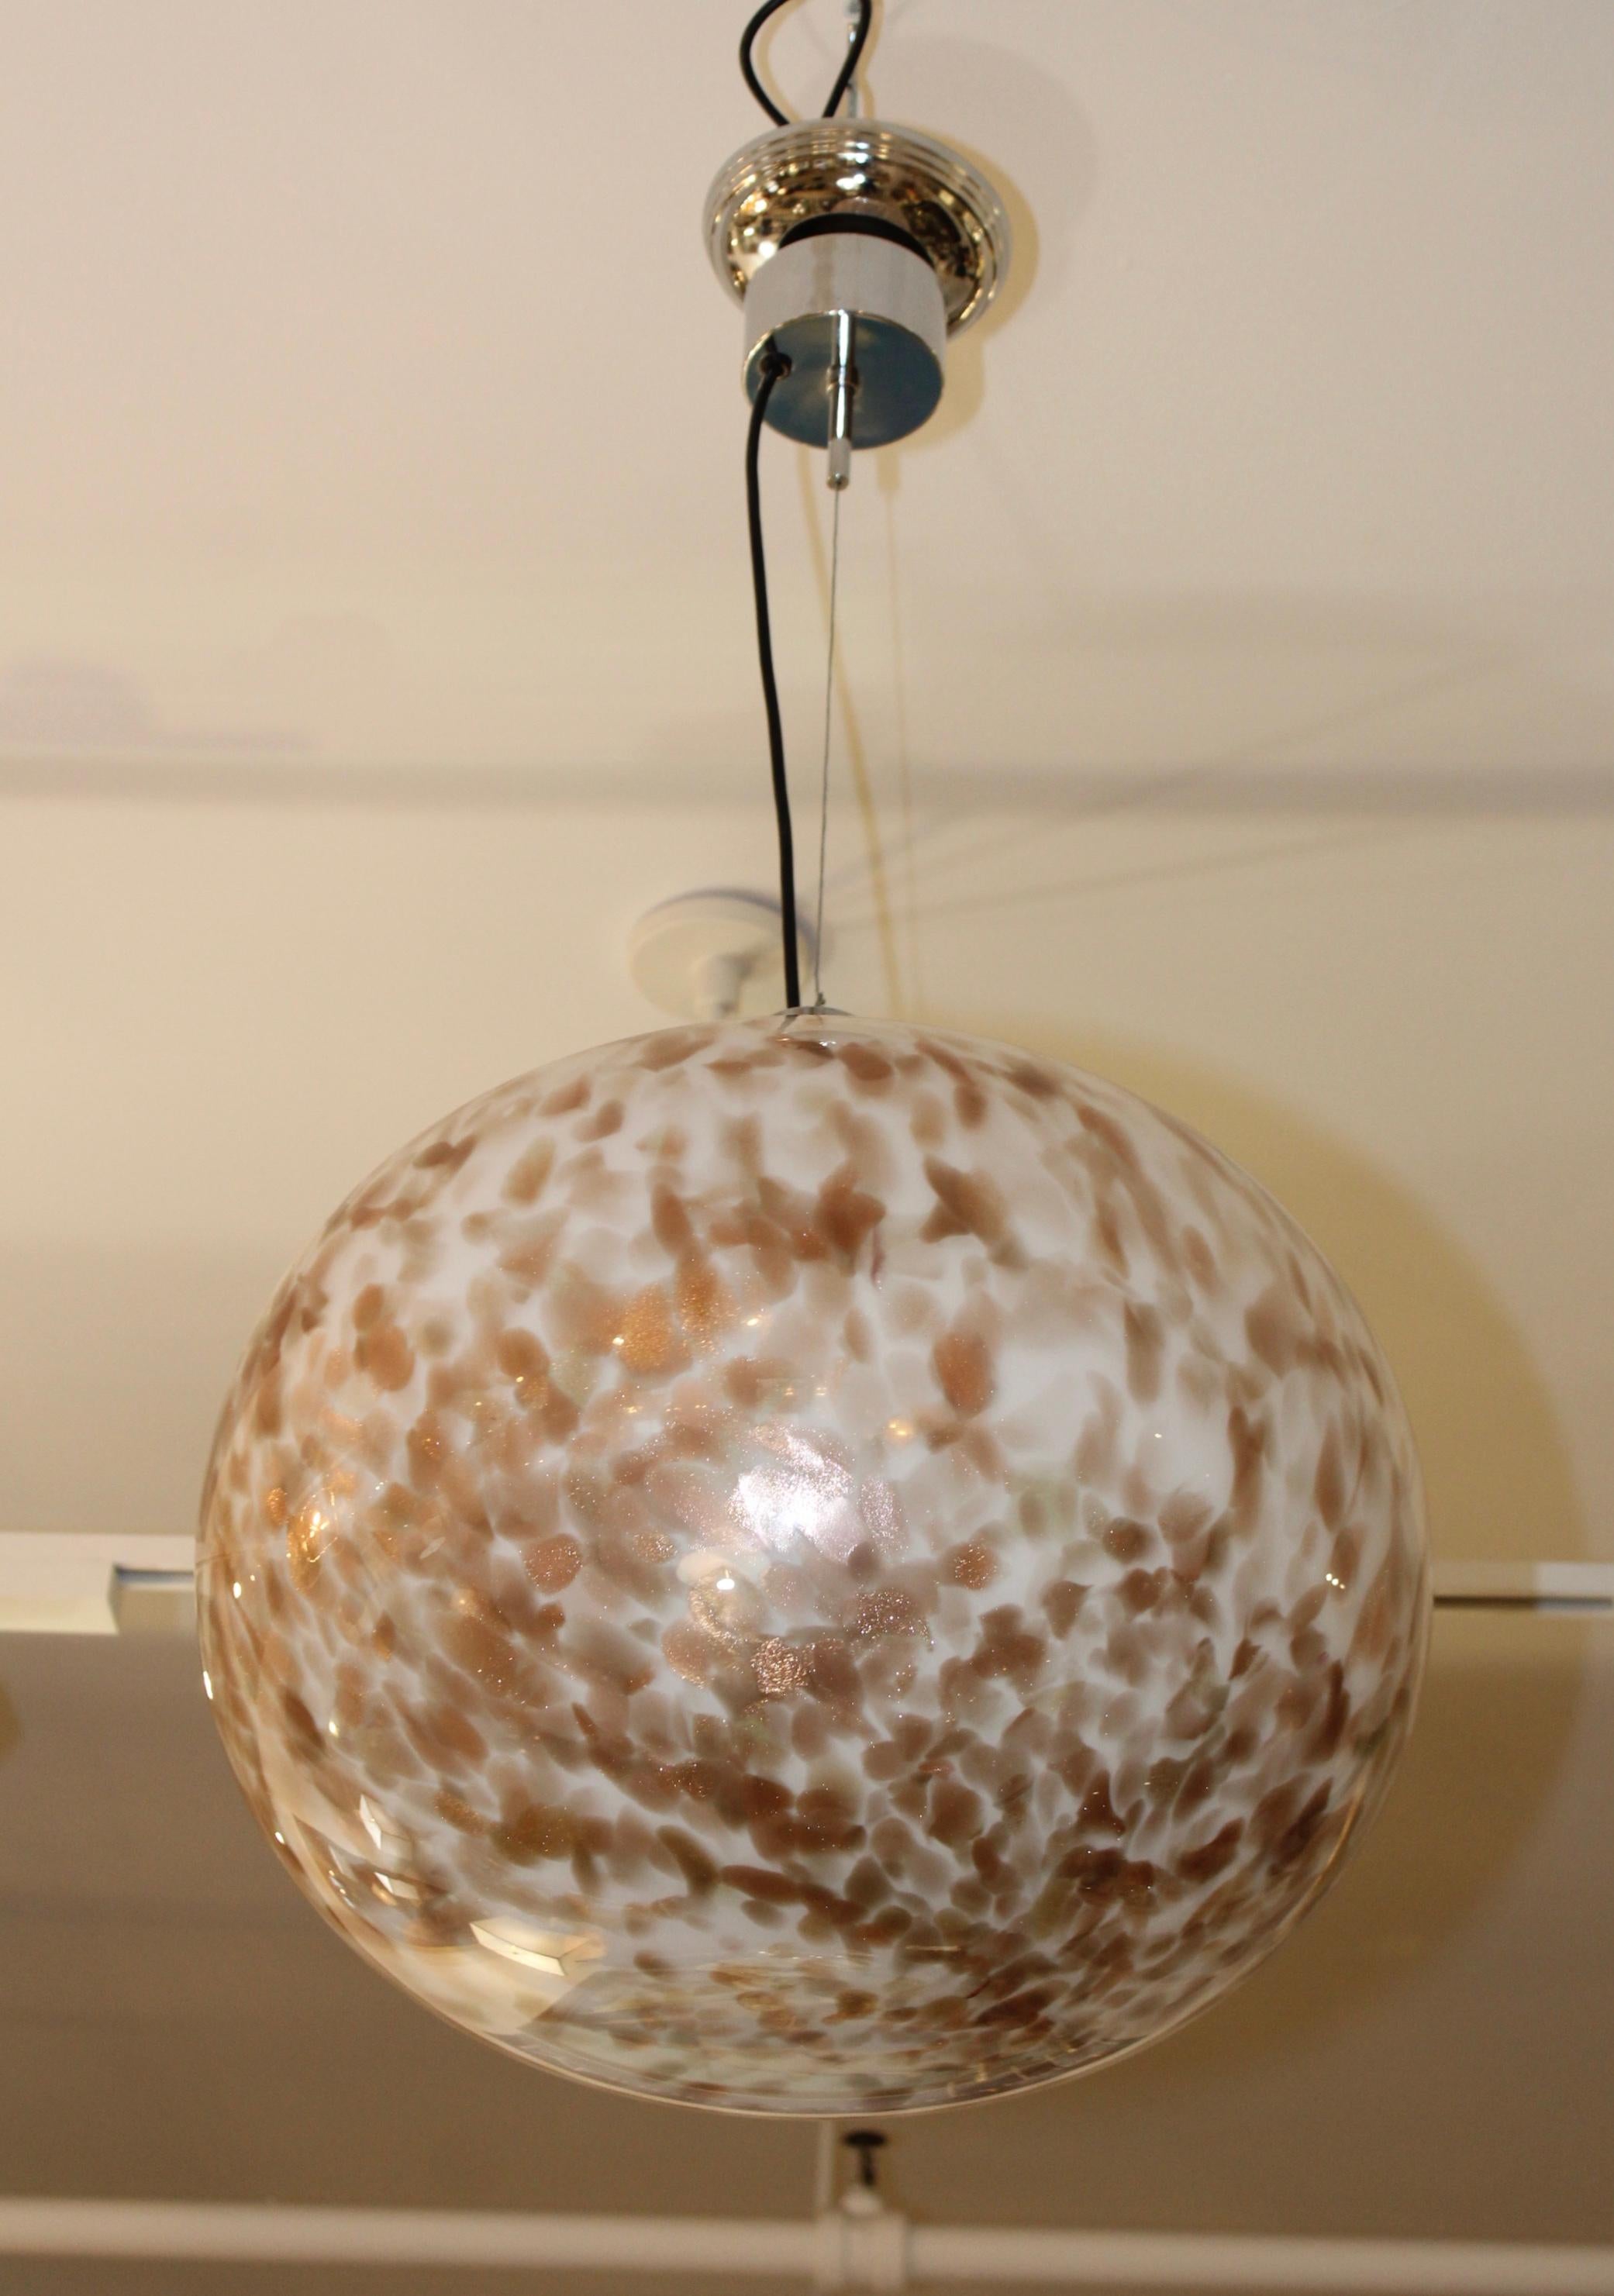 Grand pendentif moderne des années 1970 en verre de Murano avec matériel chromé, nouvellement recâblé par un professionnel et prêt à être utilisé.      